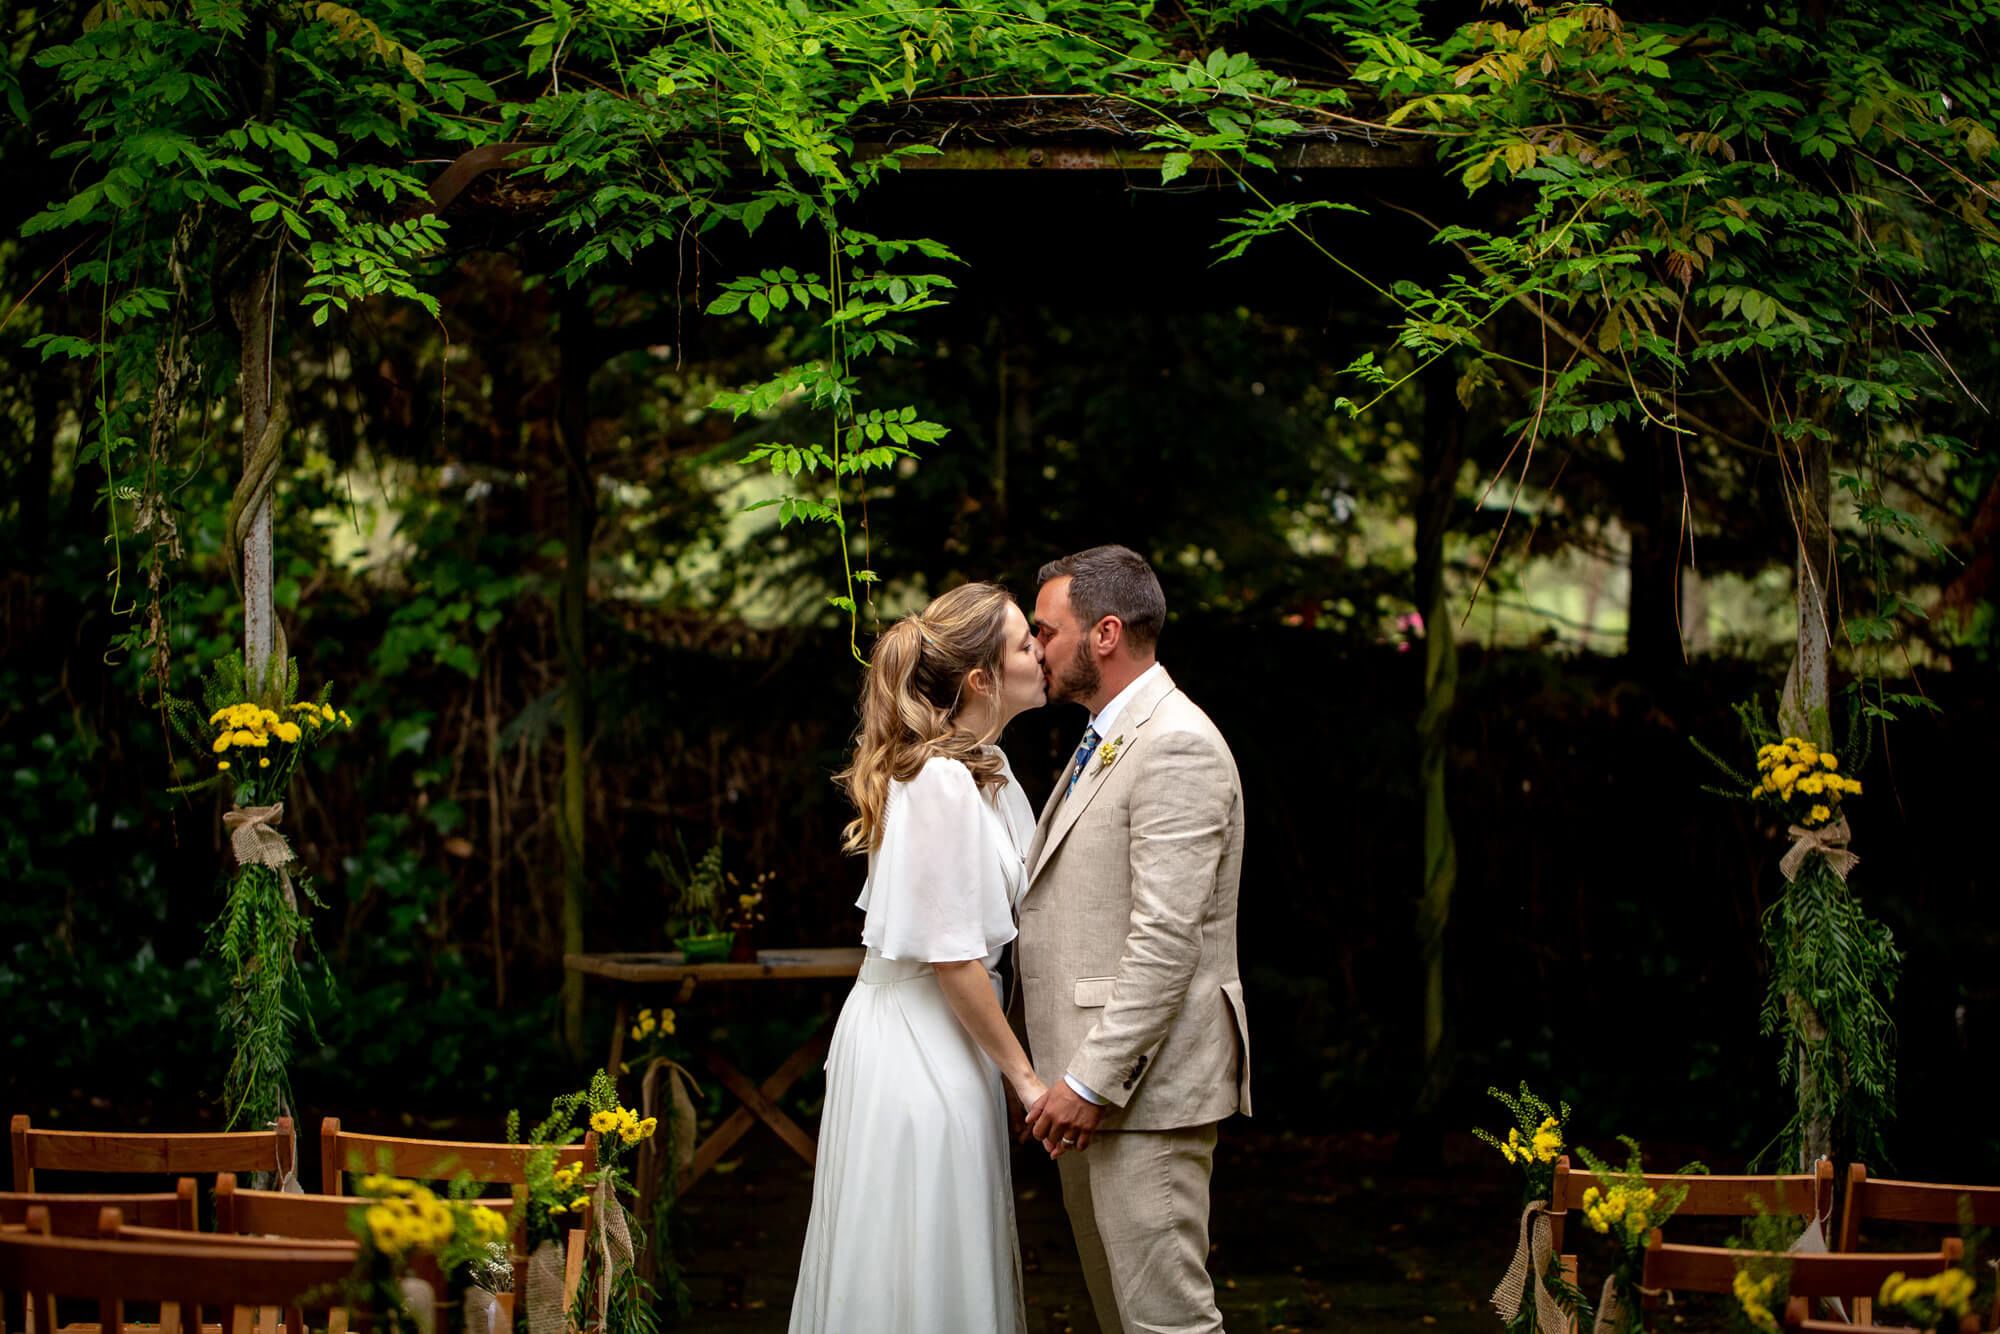 Fotografies de parella al casament sota els arbres.